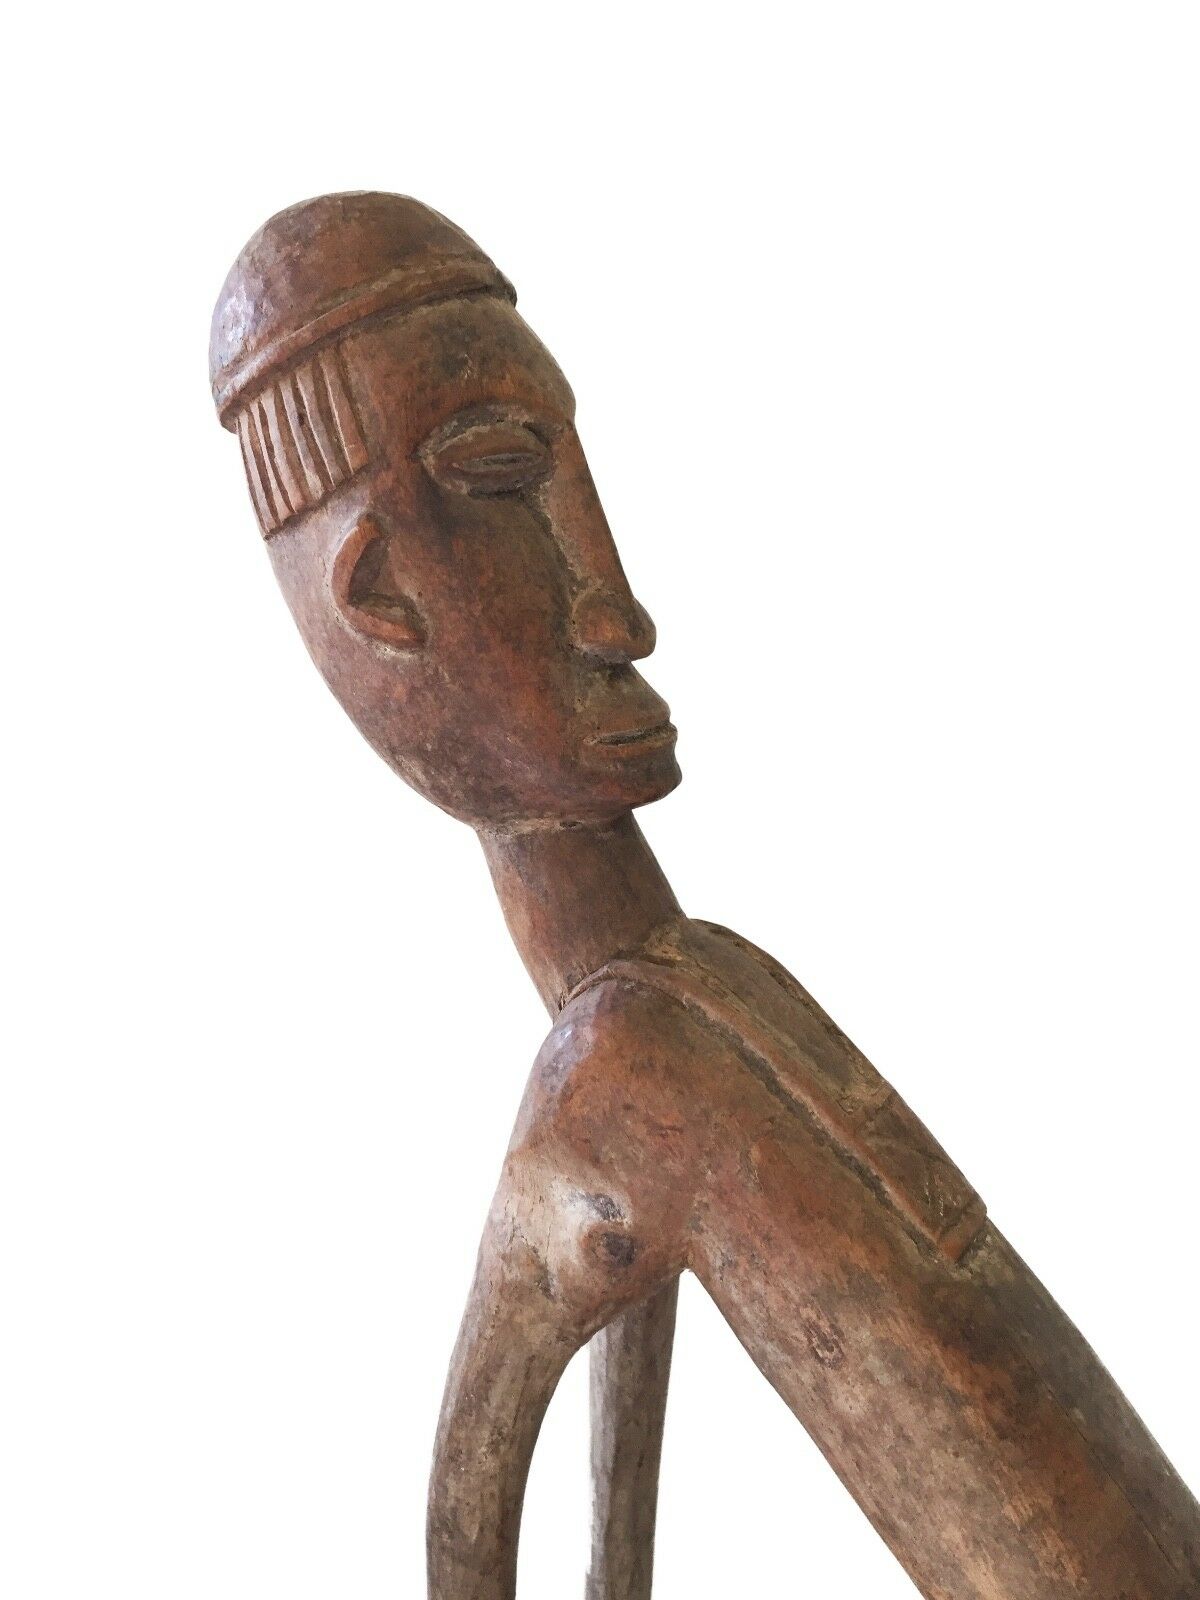 #1186 Lobi Bateba (Thil) Shrine Figure Custom Base  Africa 20.5" H